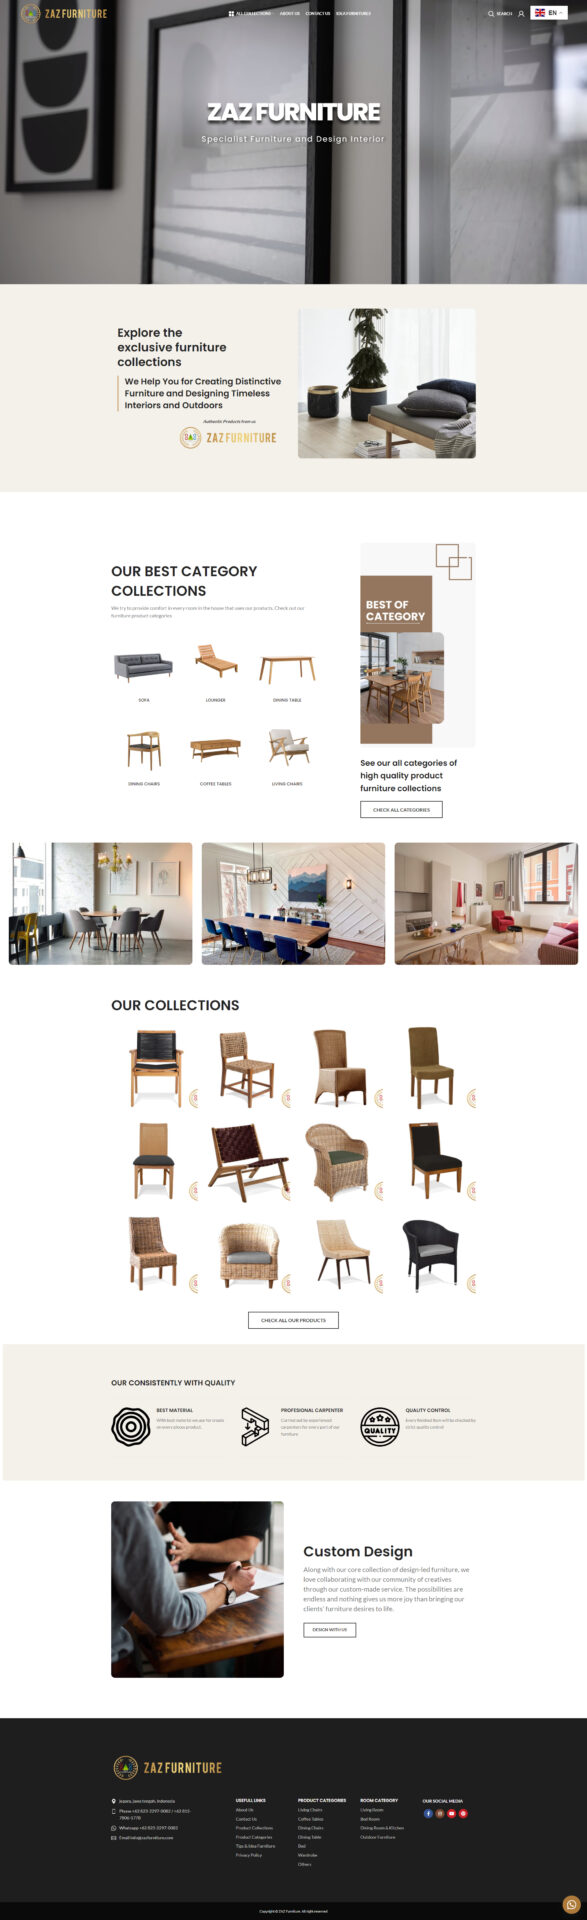 website furniture - zazfurniture.com